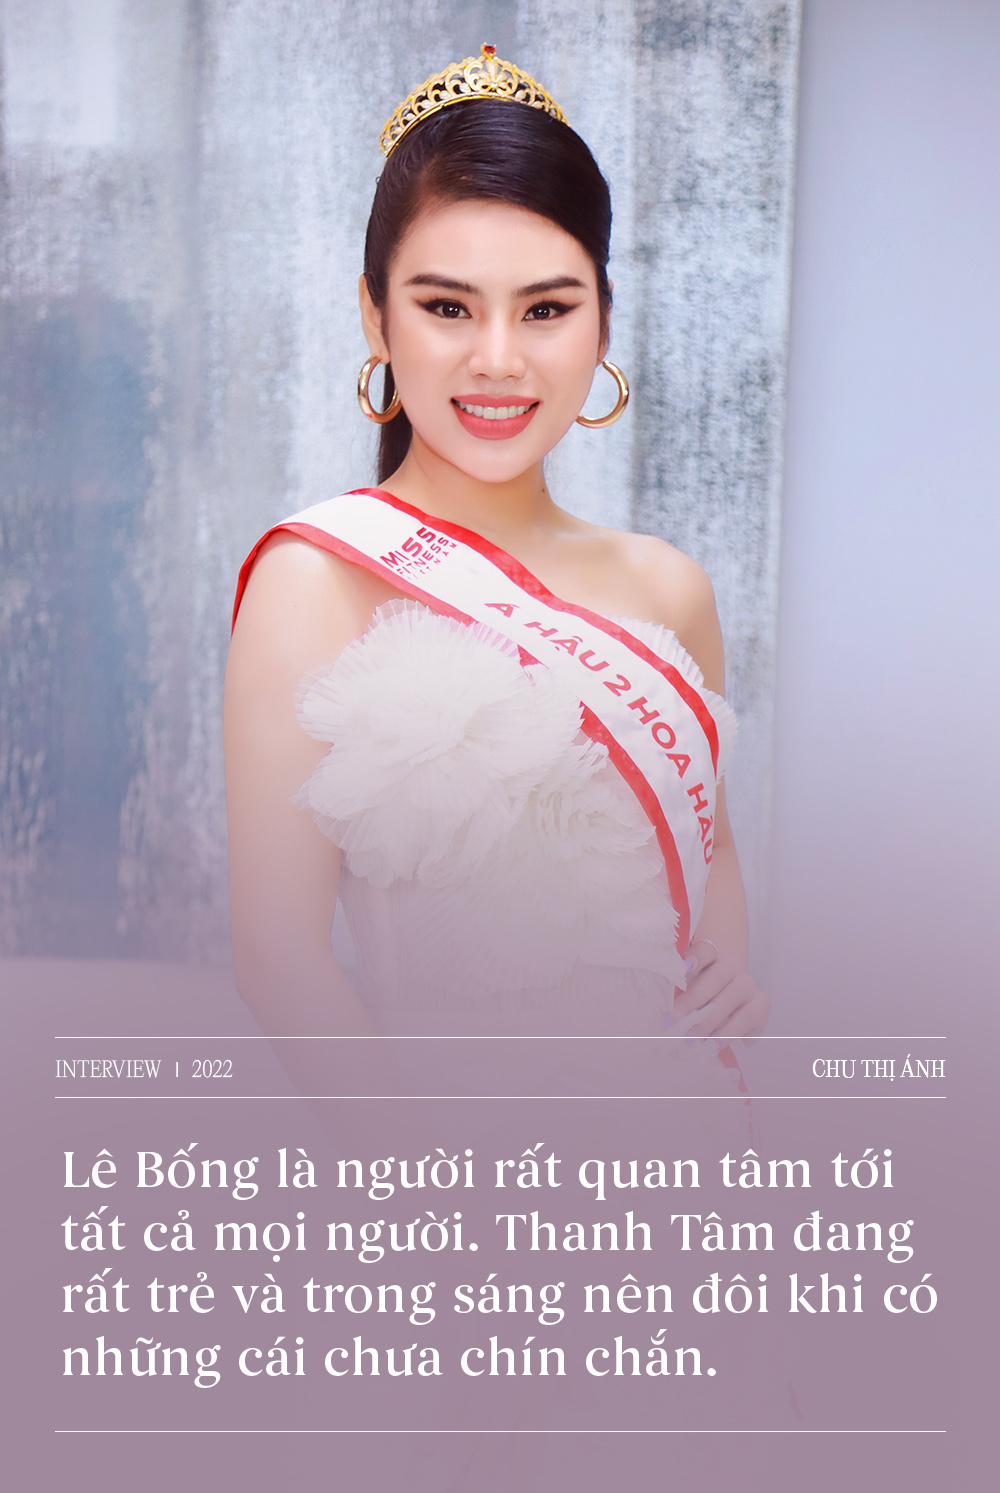 Giao lưu cùng Top 3 Hoa hậu Thể thao Việt Nam: Một lần nói rõ những lùm xùm hậu đăng quang, nhận xét thẳng thắn về Lê Bống  - Ảnh 8.